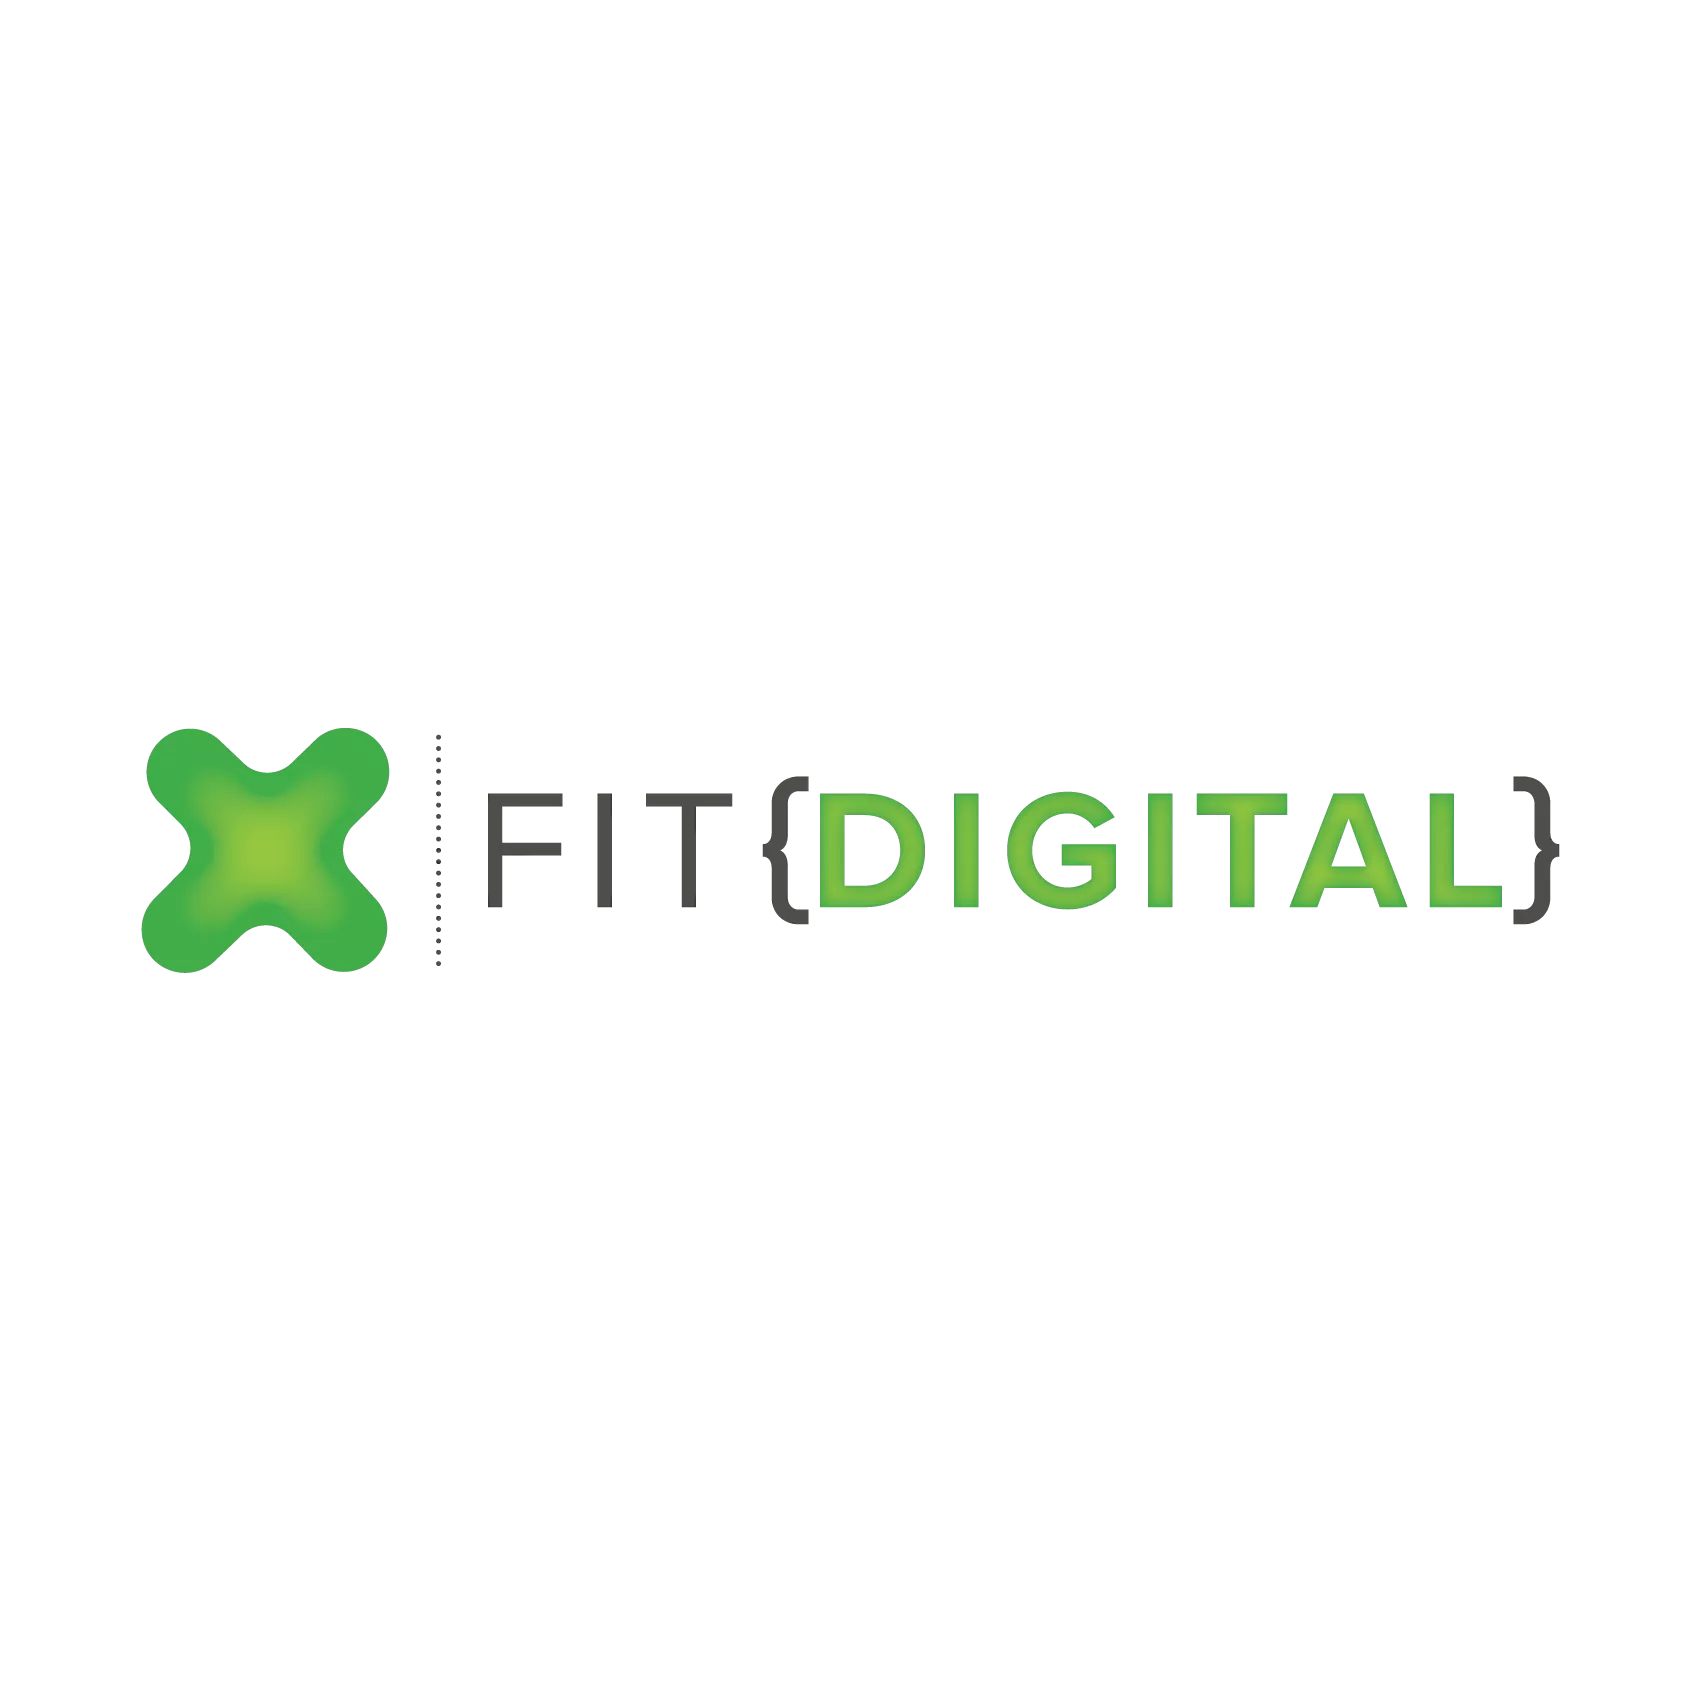 FITdigital_logo